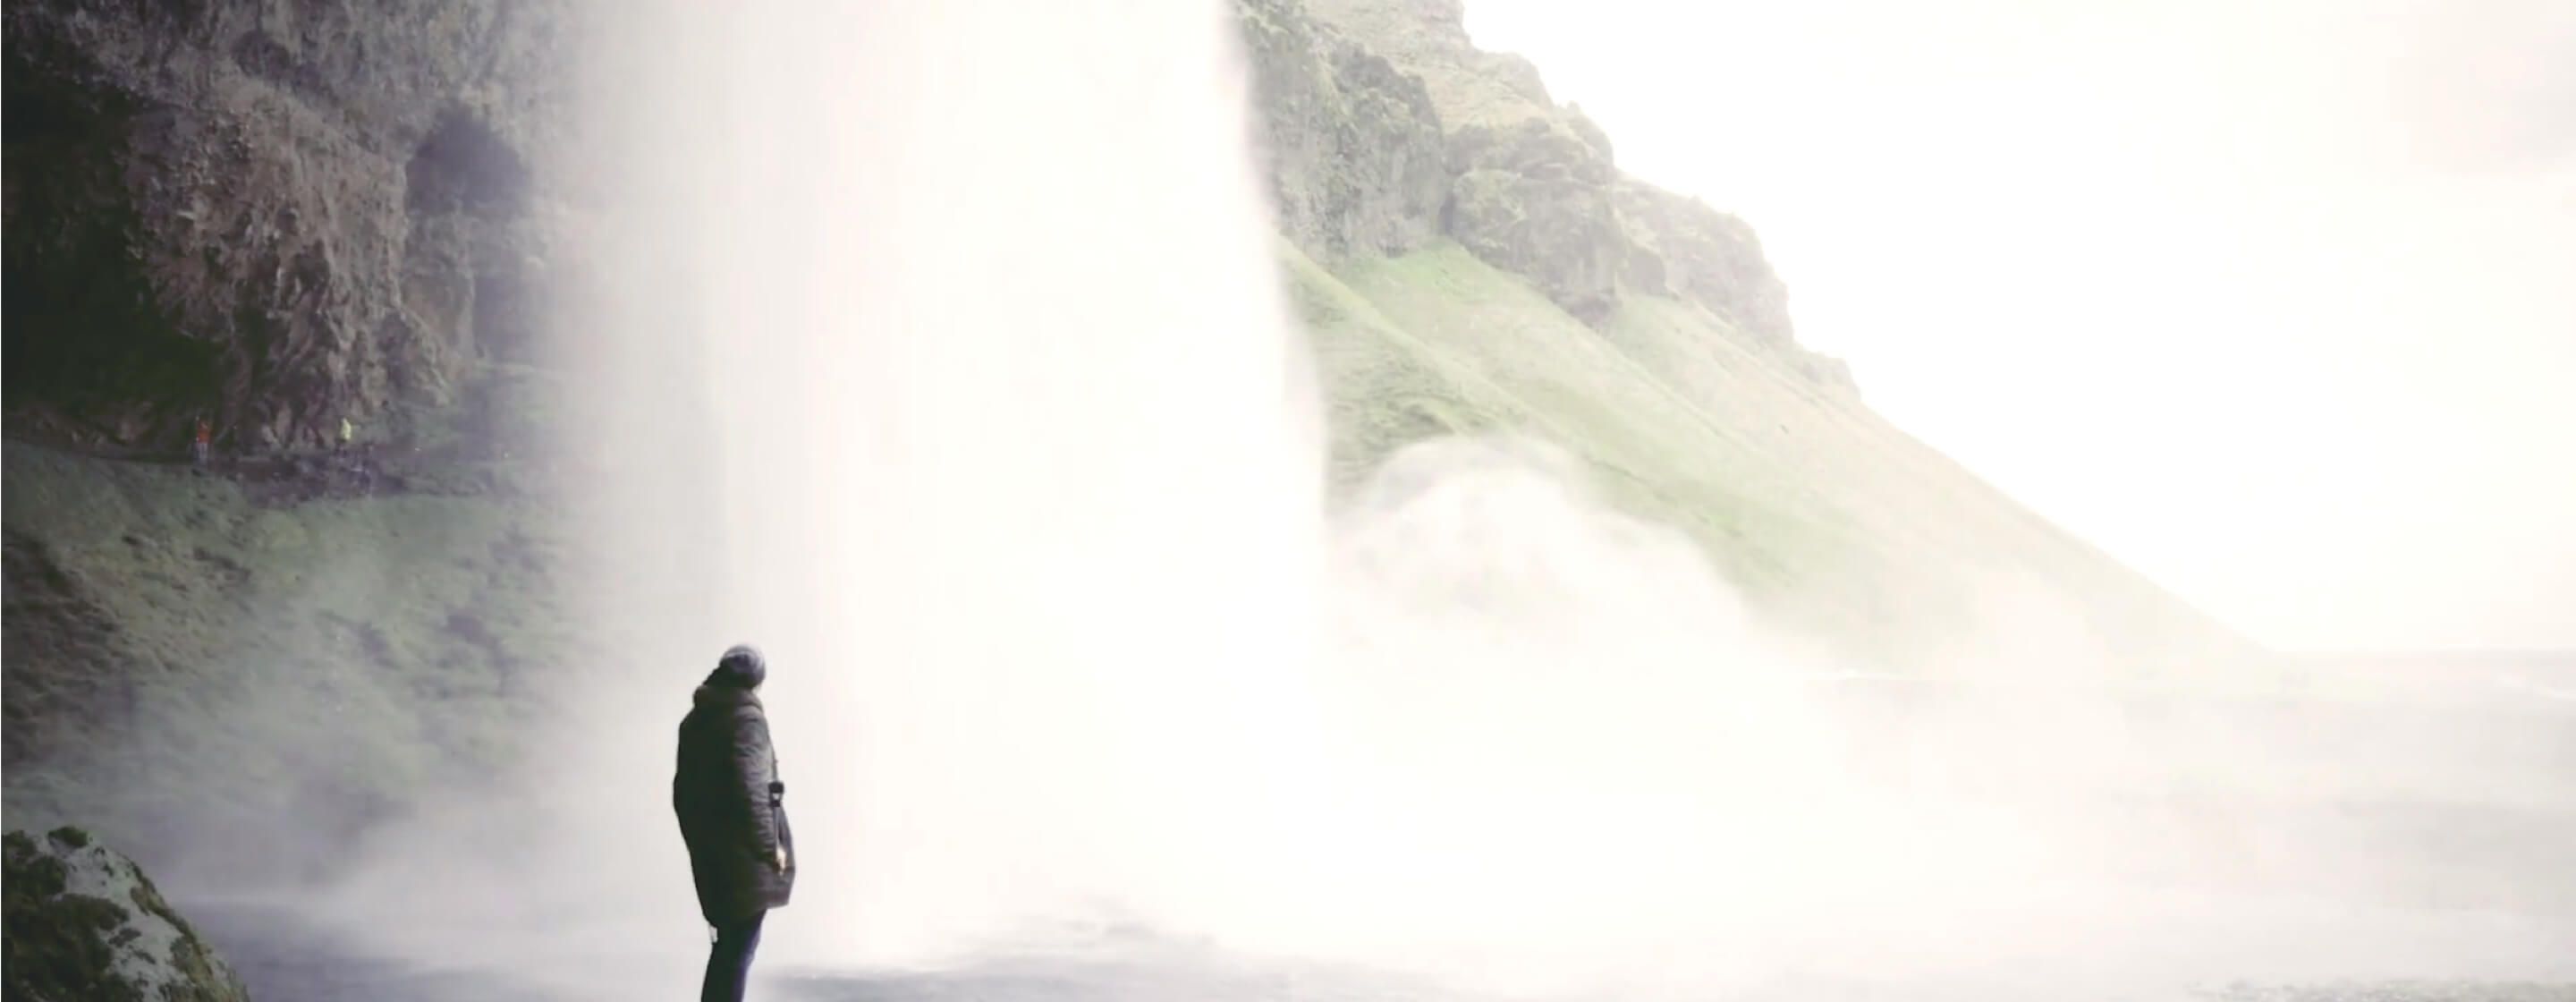 一个穿着大衣的人站在巨大的瀑布旁边，瀑布后面是岩石和绿色的山丘